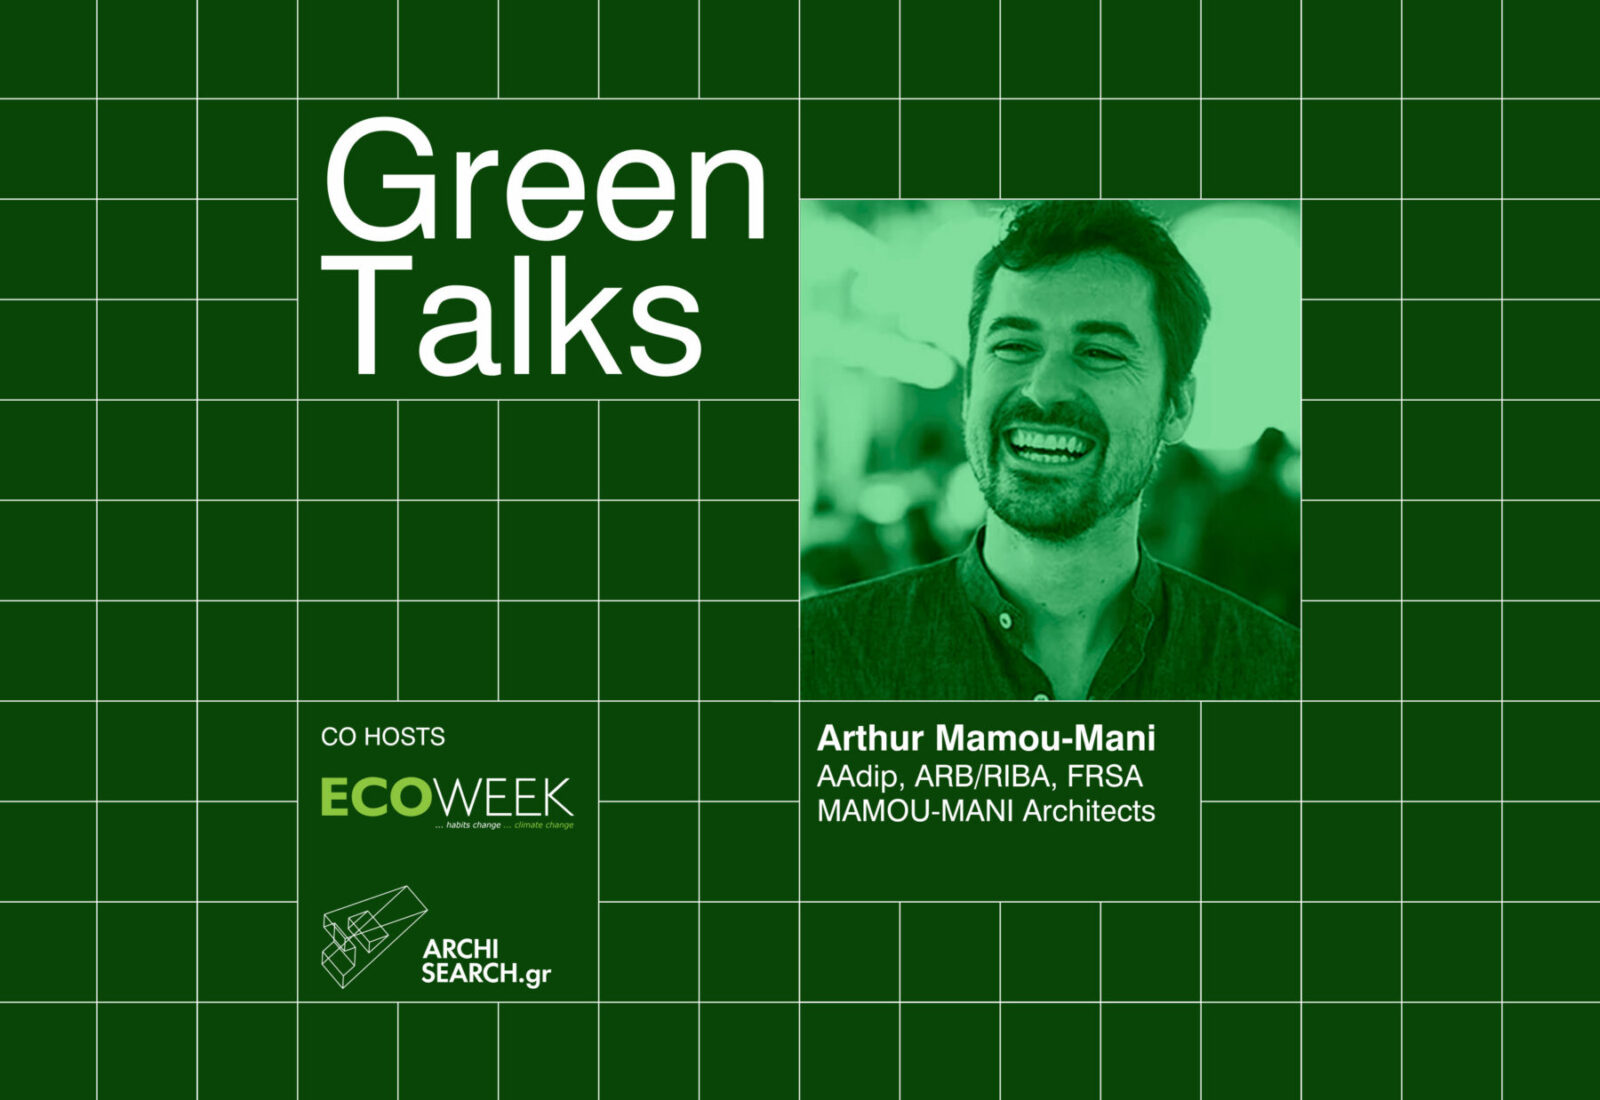 Archisearch Green talks by ECOWEEK & Archisearch.gr | Episode 1